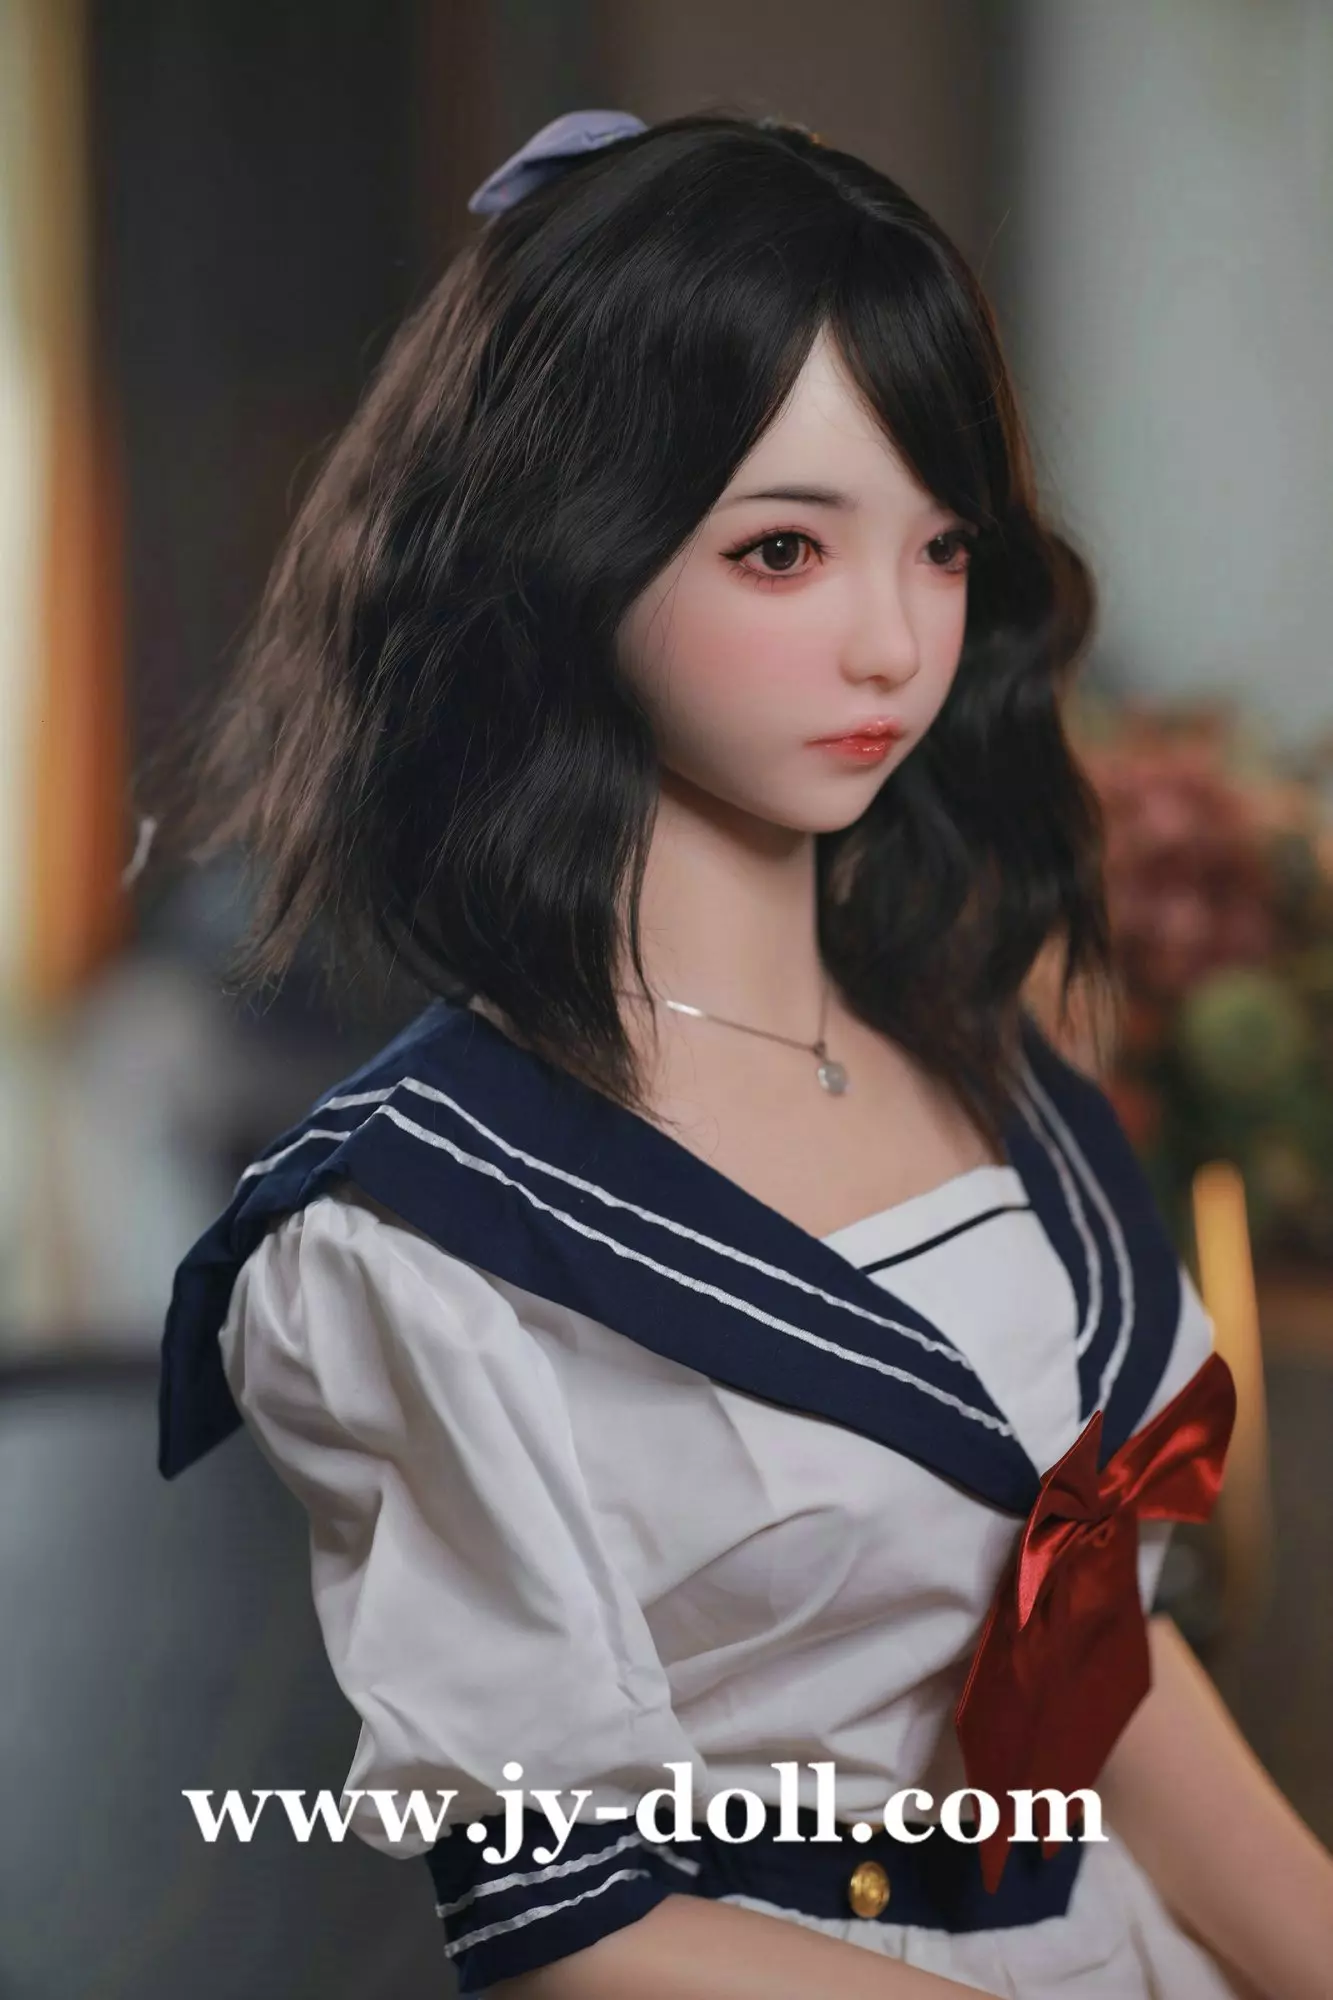 JY Doll 165cm Real sex doll full silicone doll Lynn